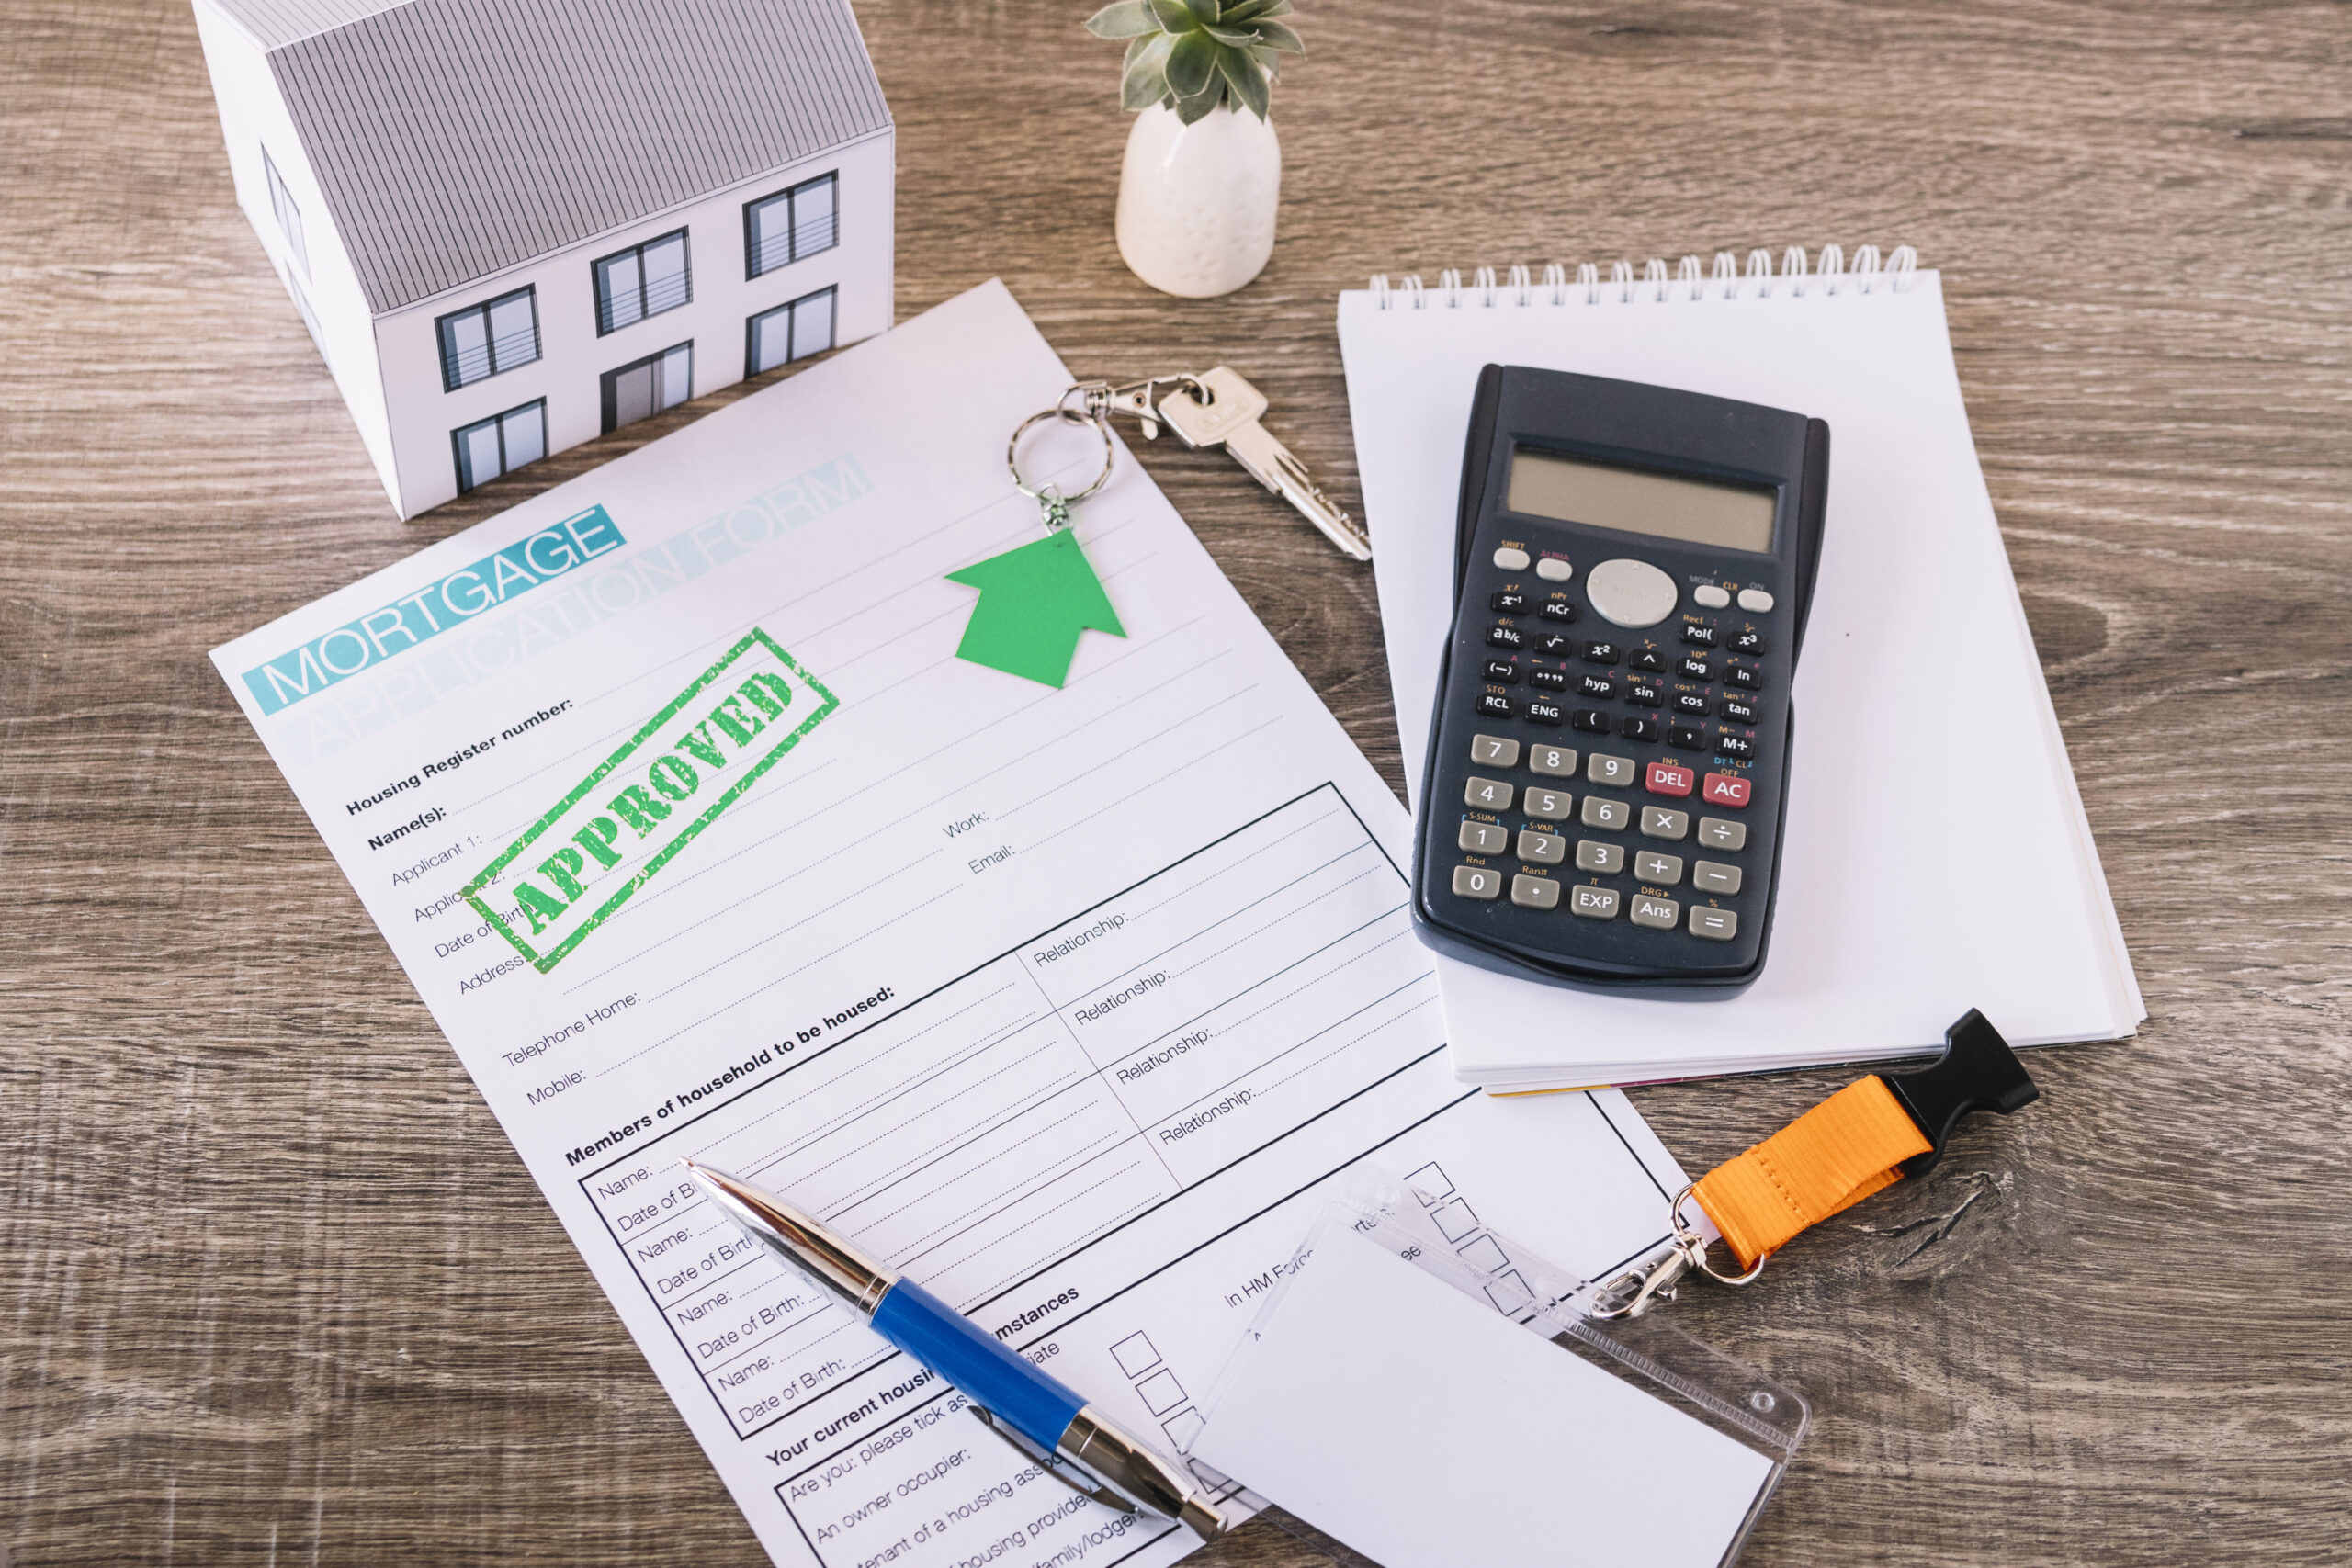 É possível pré-aprovar o crédito imobiliário antes de escolher um imóvel?